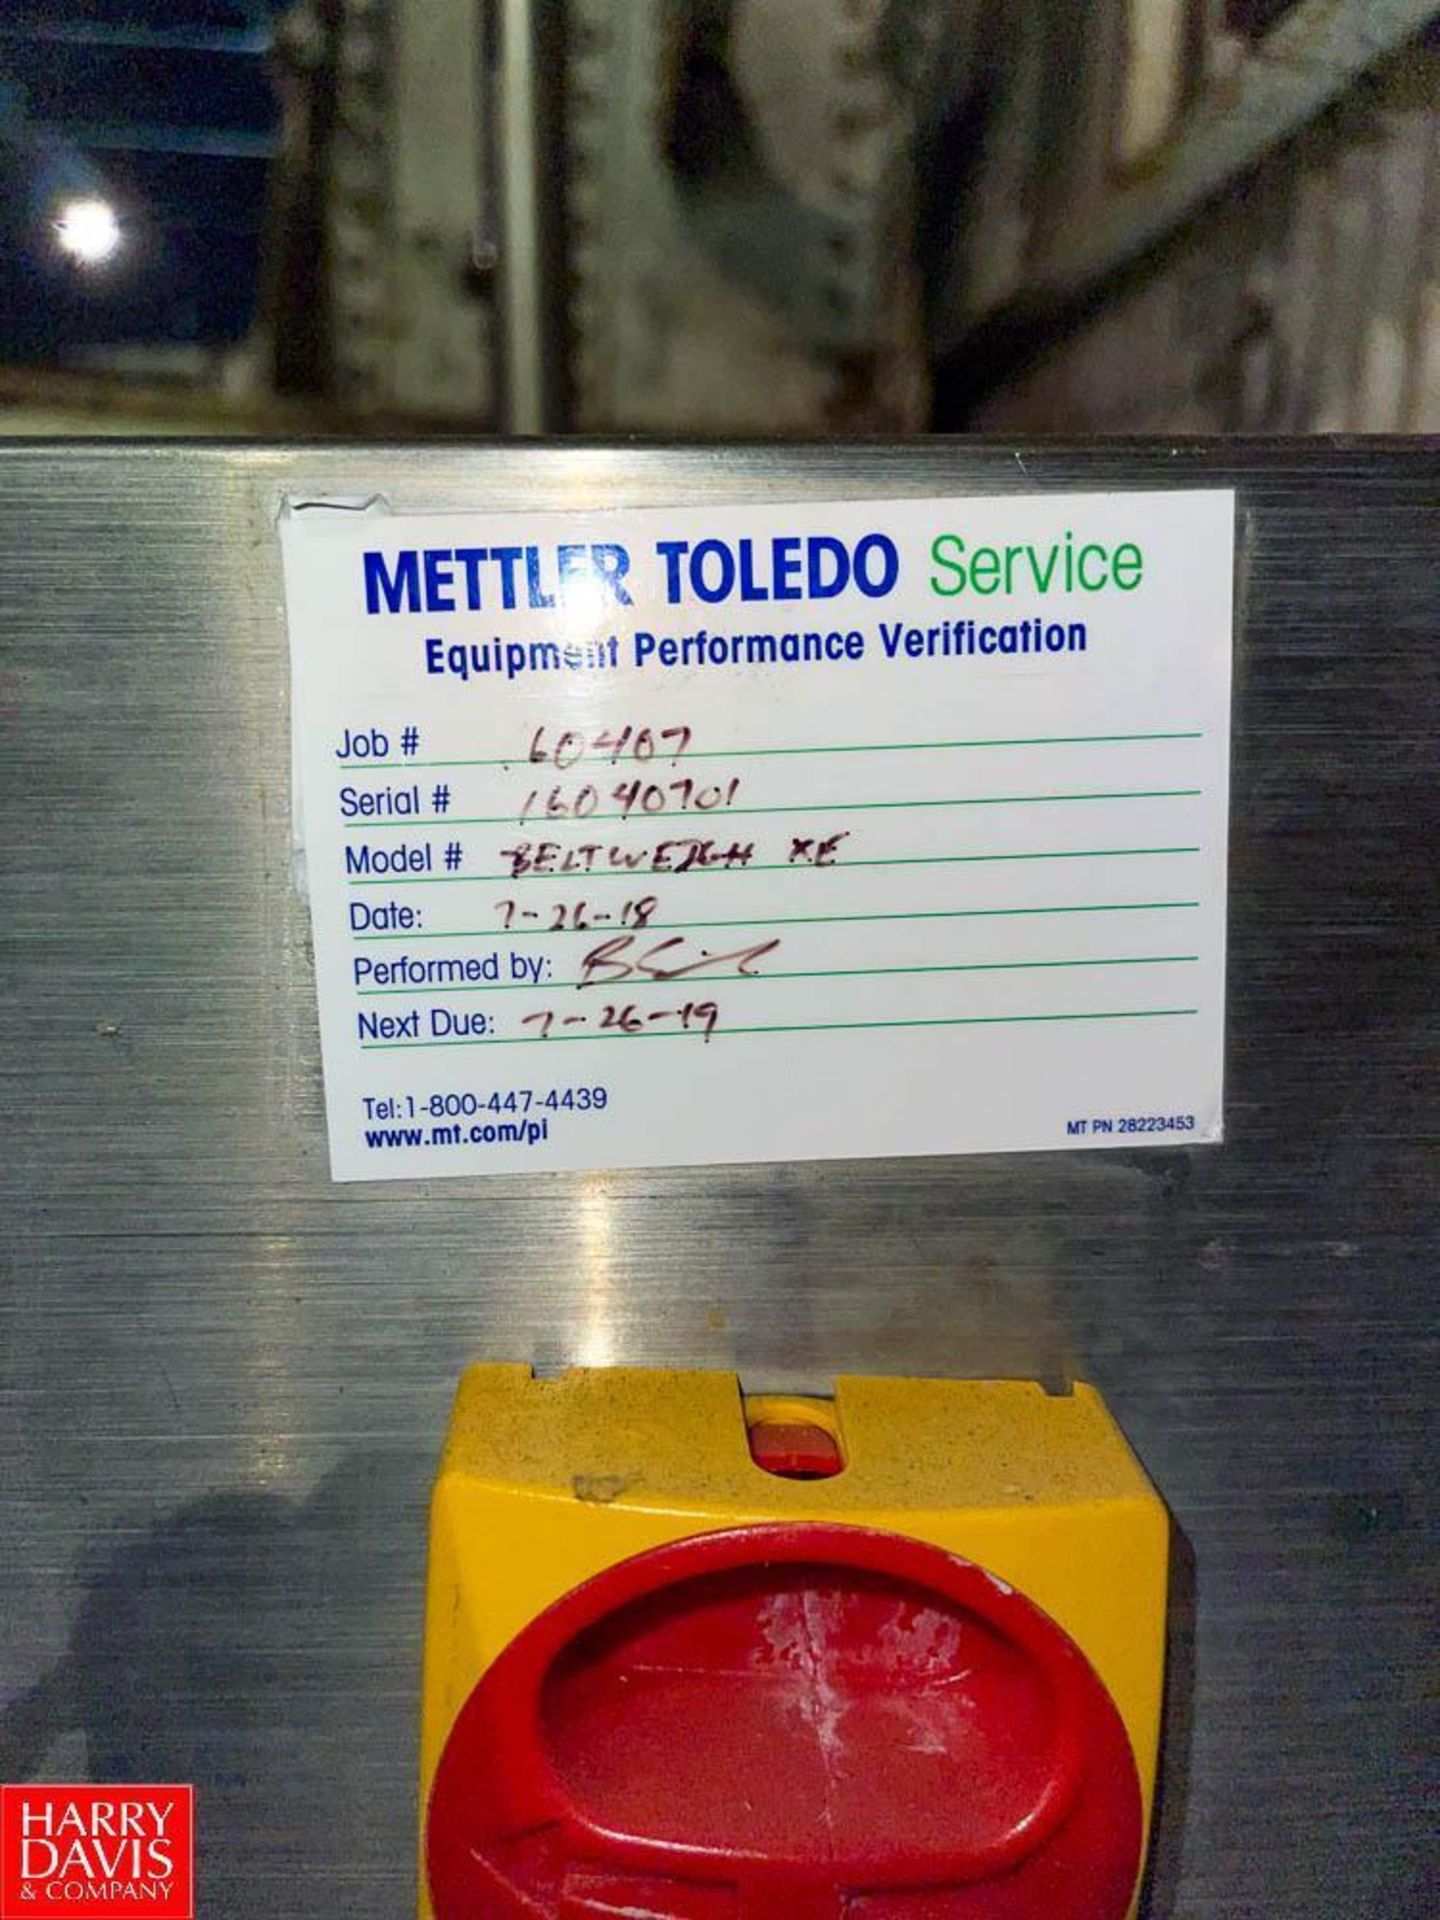 Mettler Toledo Safeline Metal Detector 10" x 9.75" Aperture with Conveyor, Model: BELTWEIGHXE, S/N 1 - Image 2 of 2